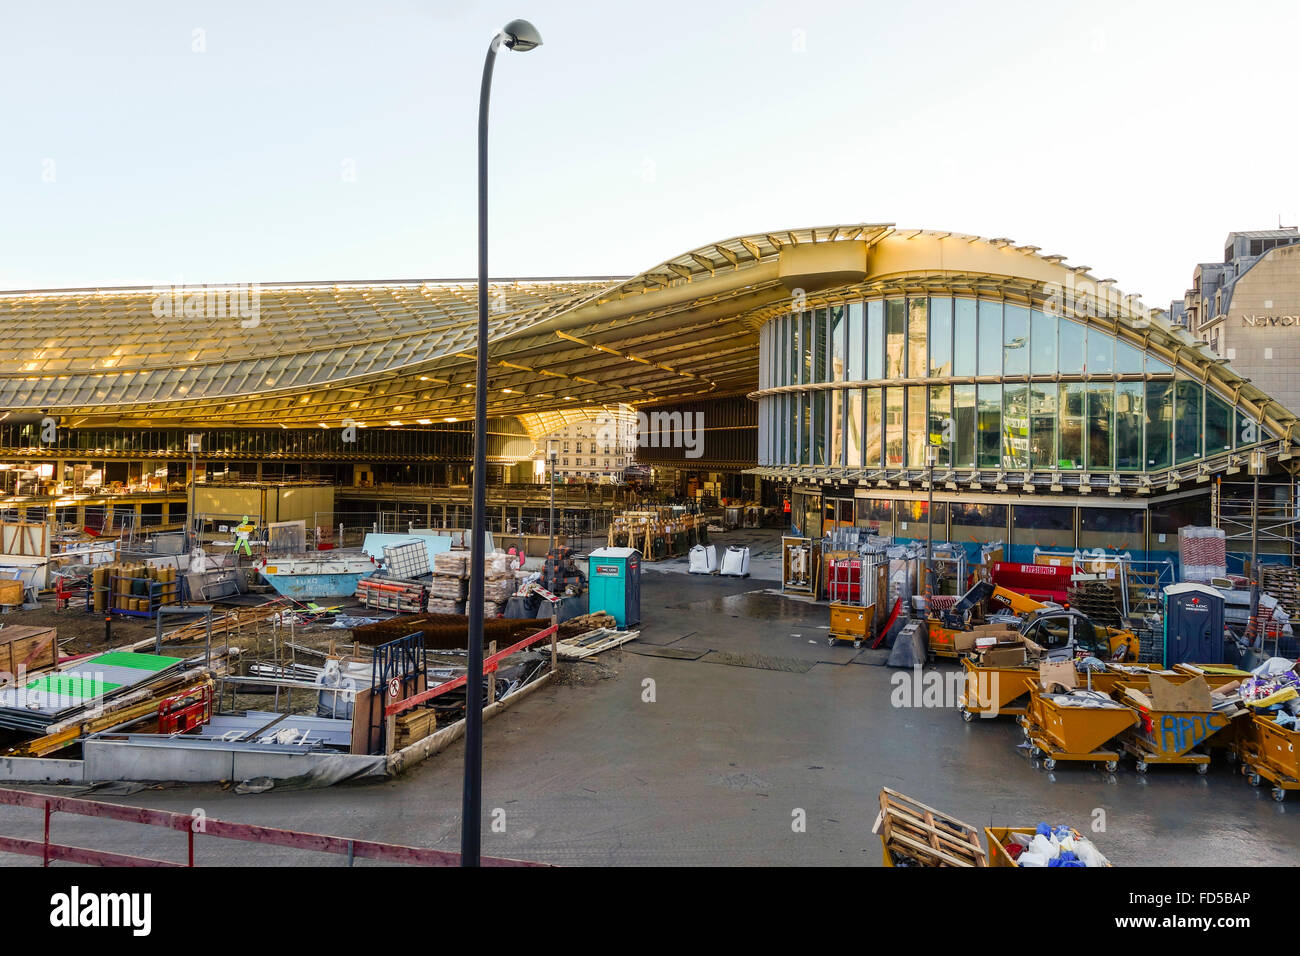 Remodeling project of Le Forum des Les Halles in the 1st arrondissement under construction, Paris, France. 2016 Stock Photo